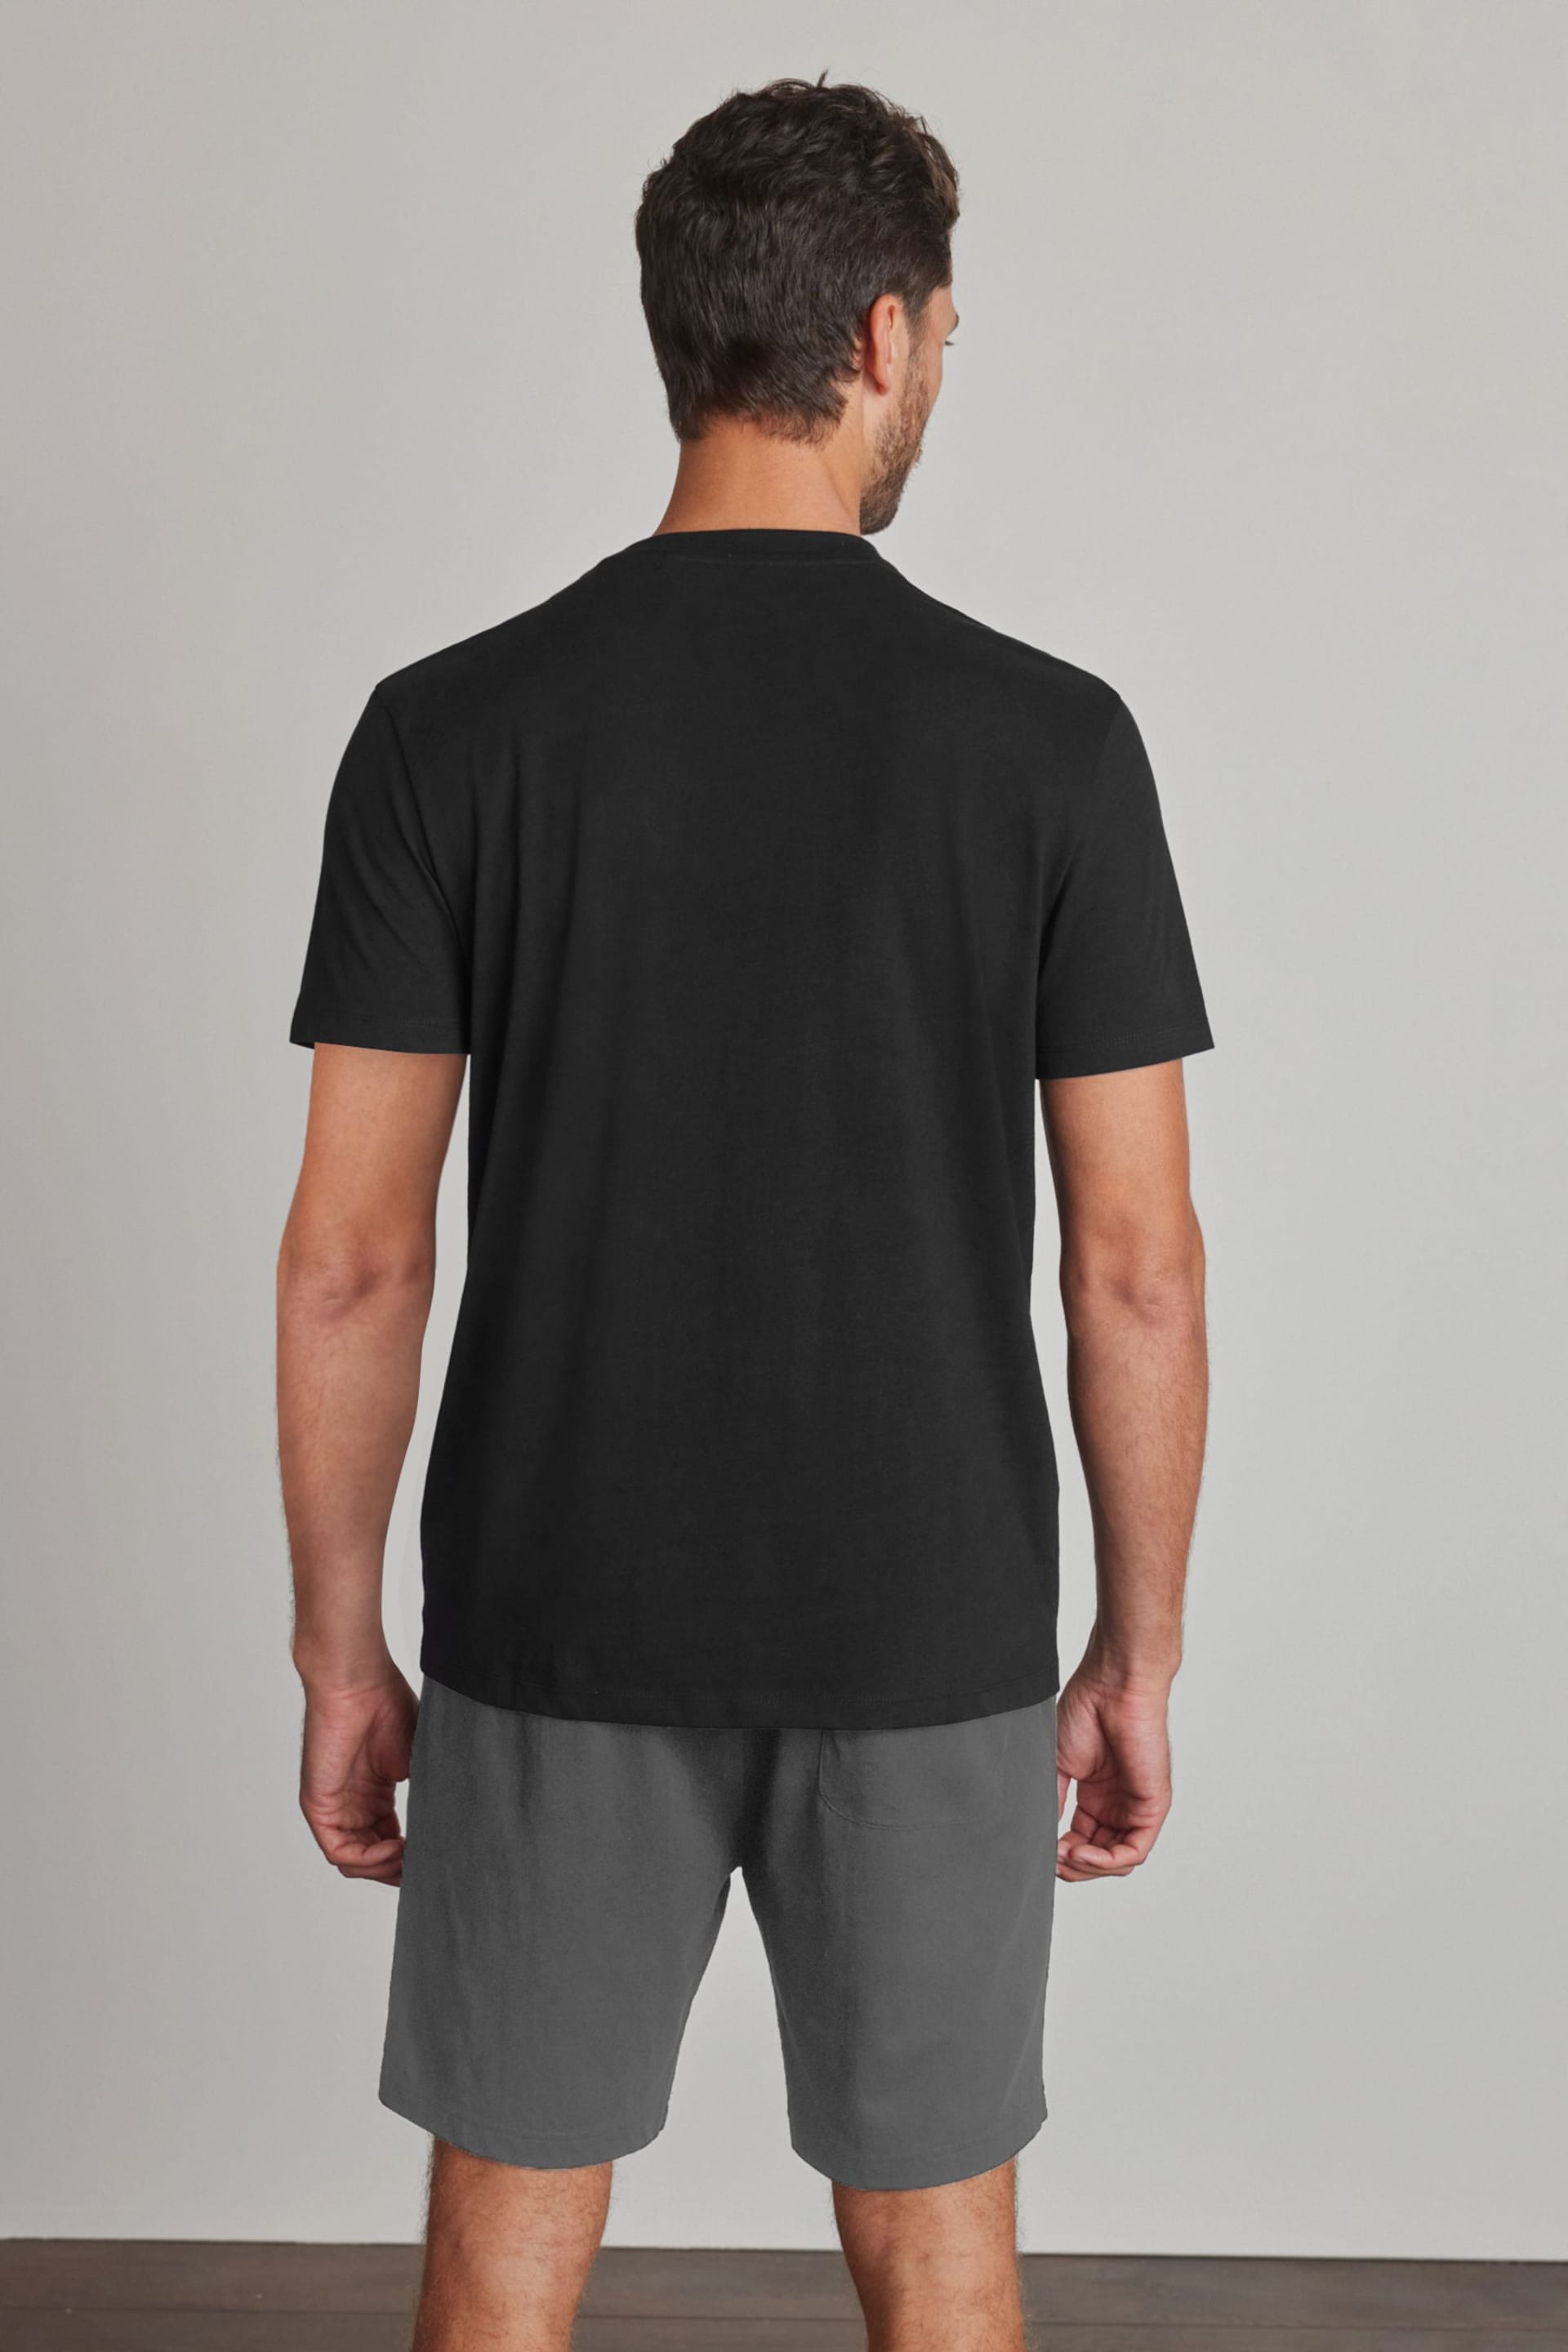 Black/Grey Jersey Pyjama Shorts Set - Image 2 of 8